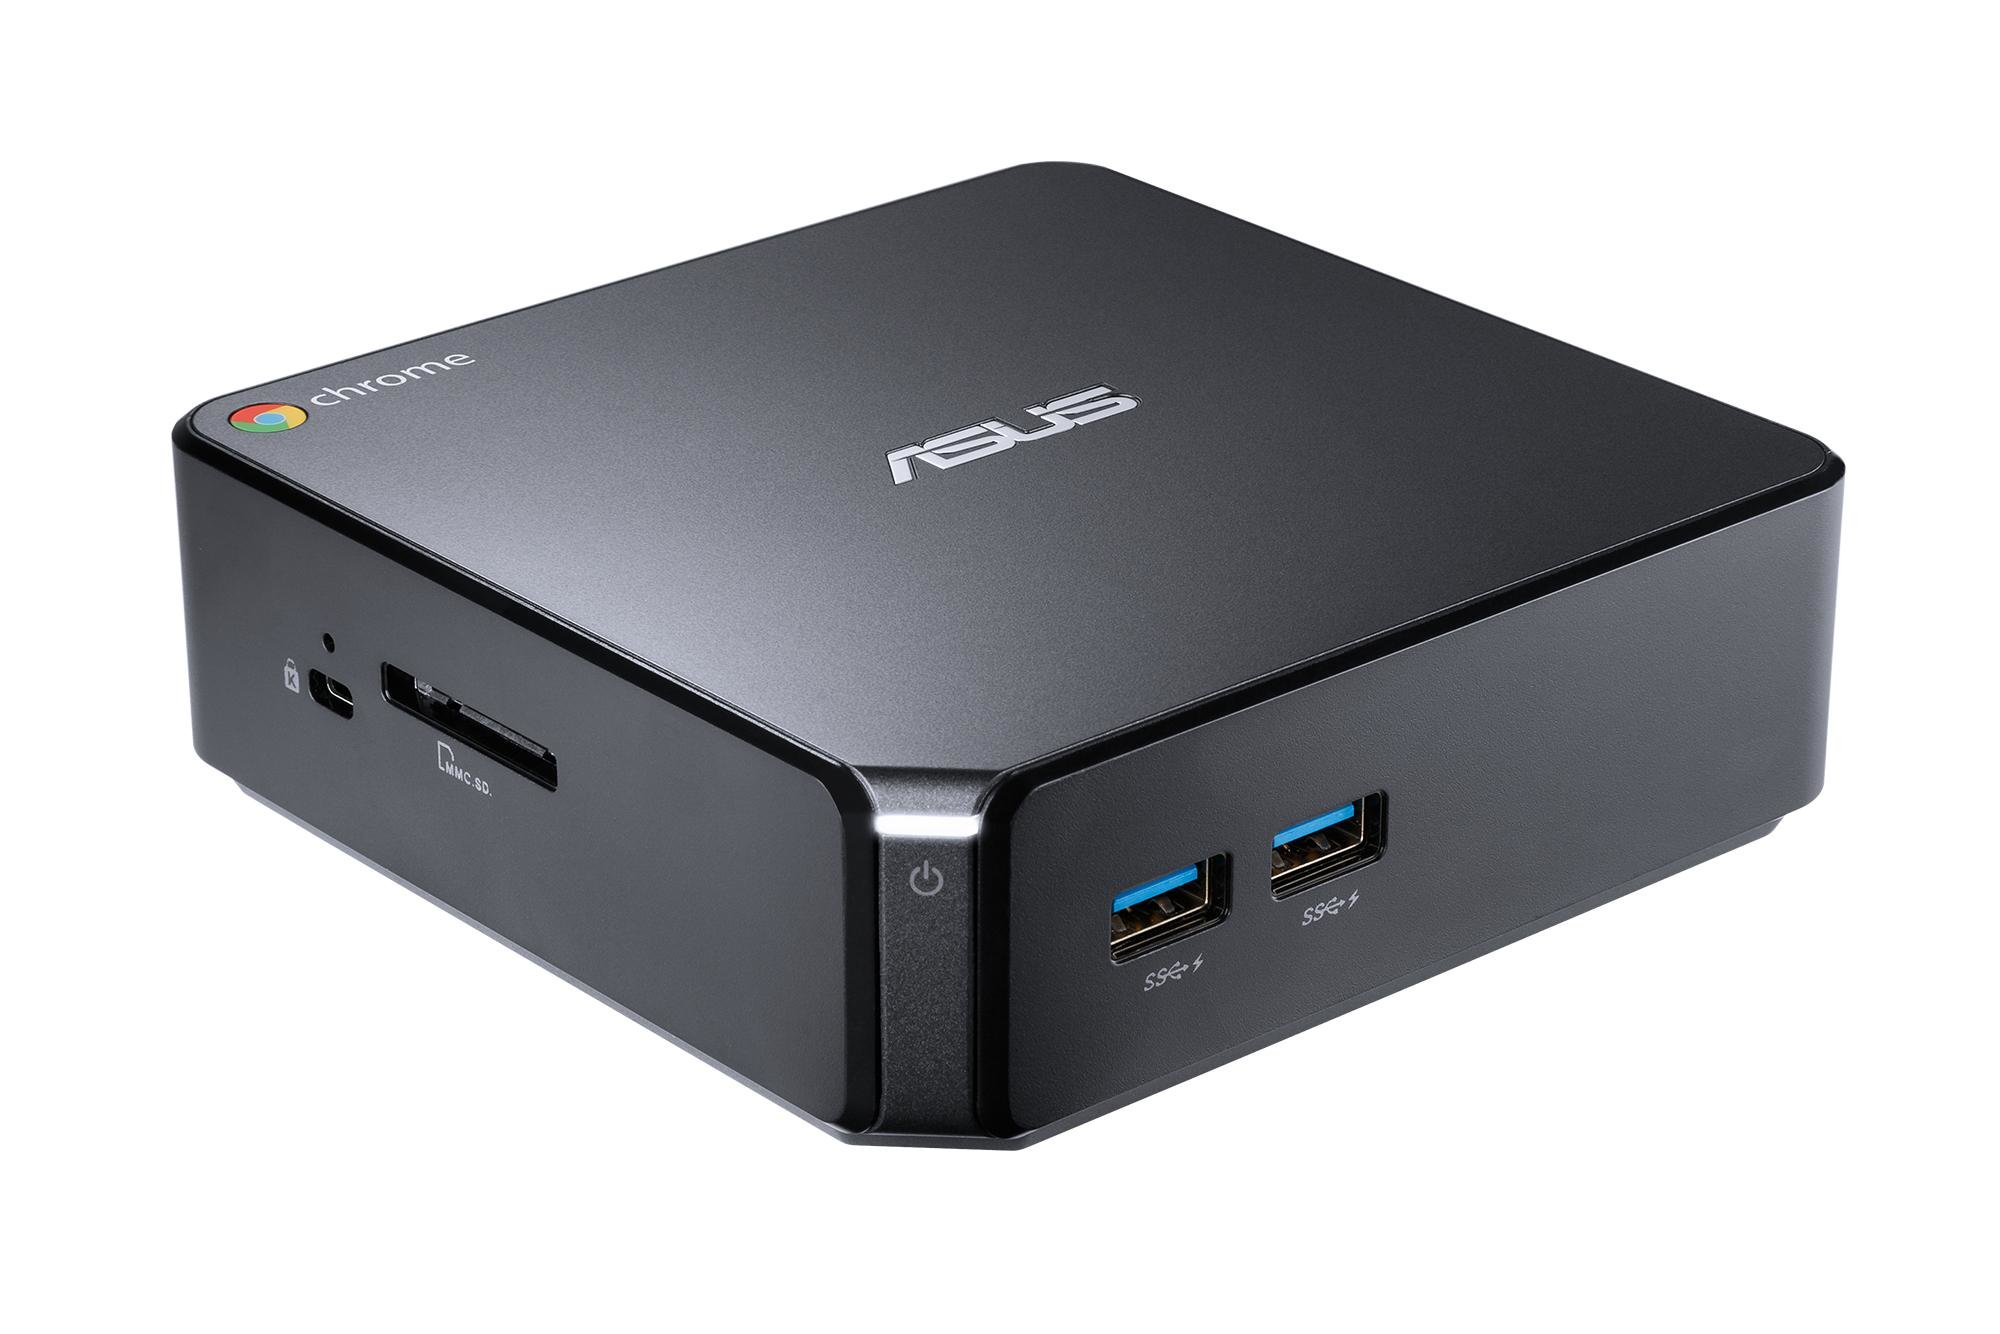 ASUS Chromebox 3 N7043U Mini PC Intel Core i7-8550U Quad-Core CPU 4GB RAM 32GB M.2 SSD Intel HD Graphics 622